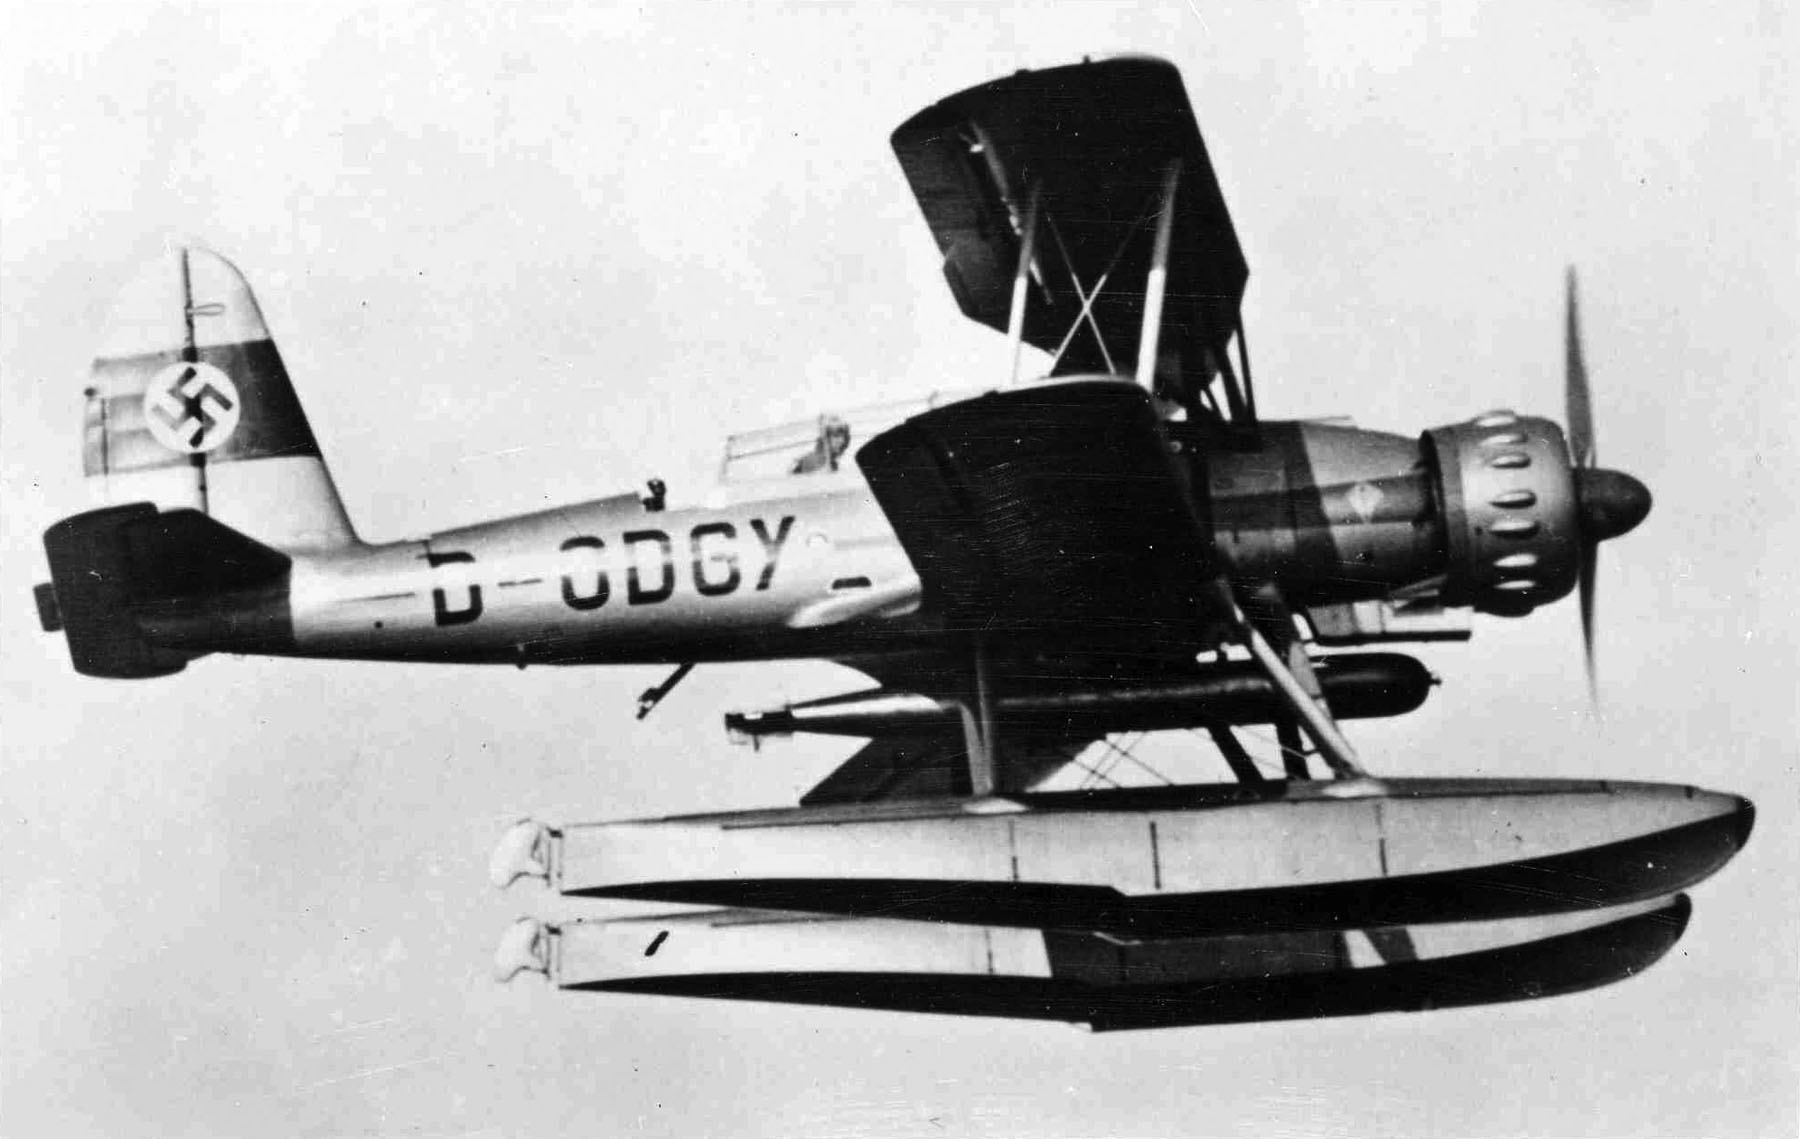 Ar 95 seaplane in flight, late 1930s